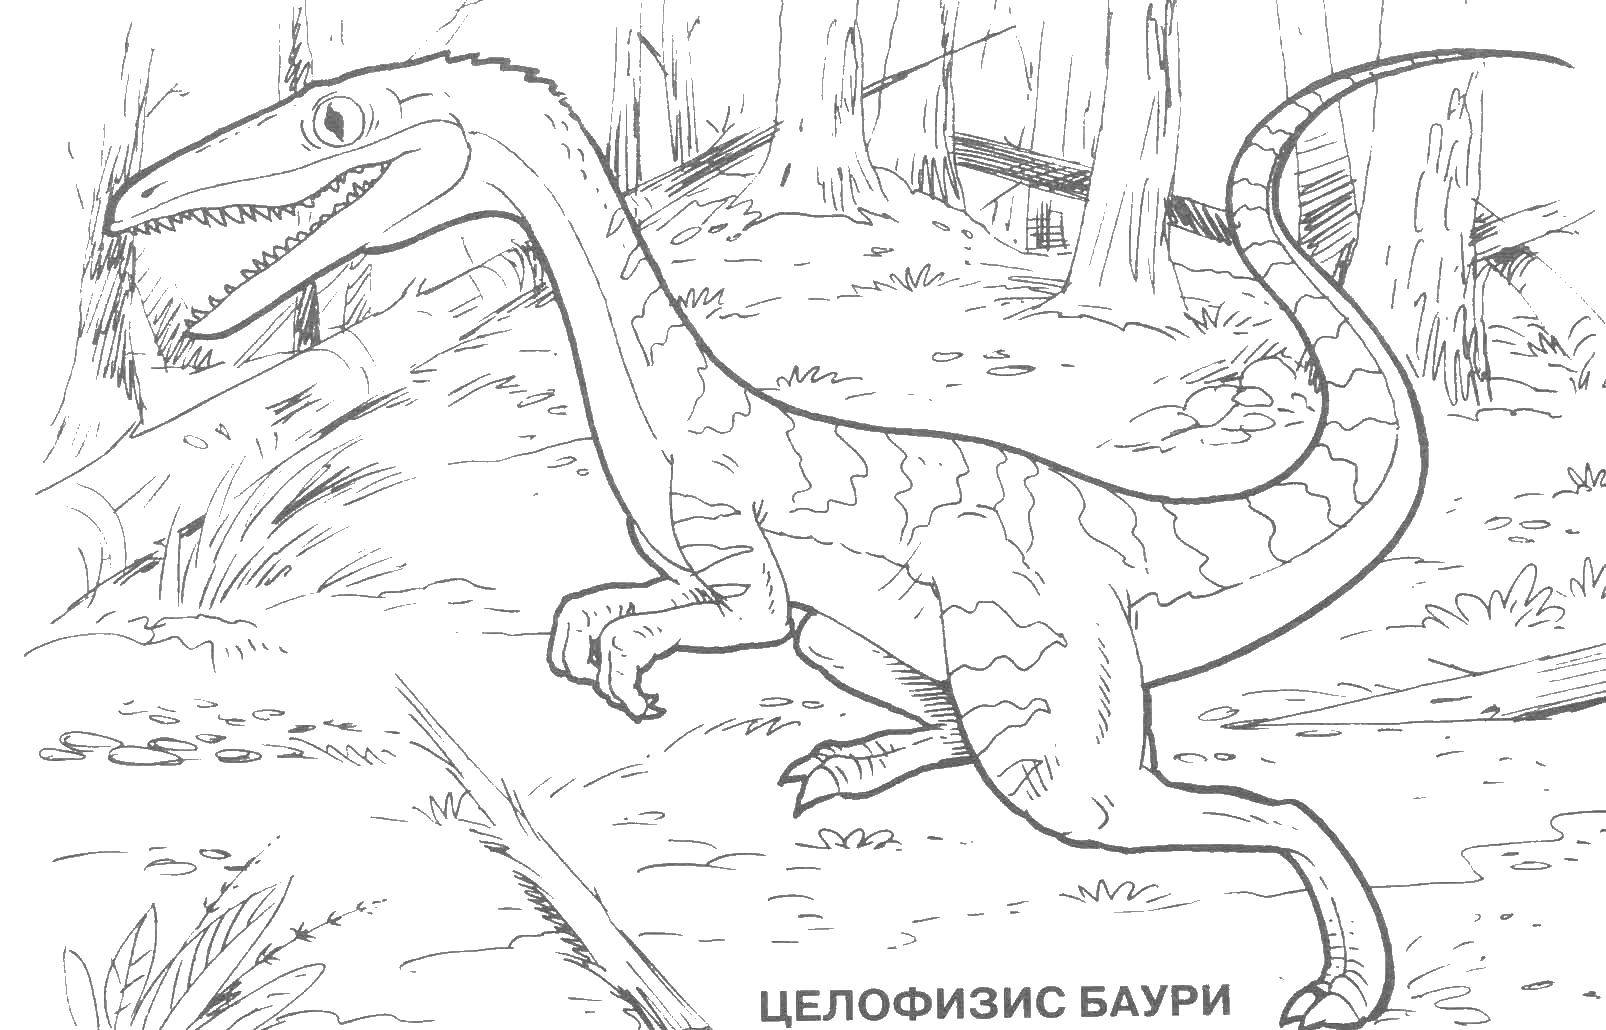 Название: Раскраска Целофизис баури. Категория: парк юрского периода. Теги: целофизис баури, динозавр.